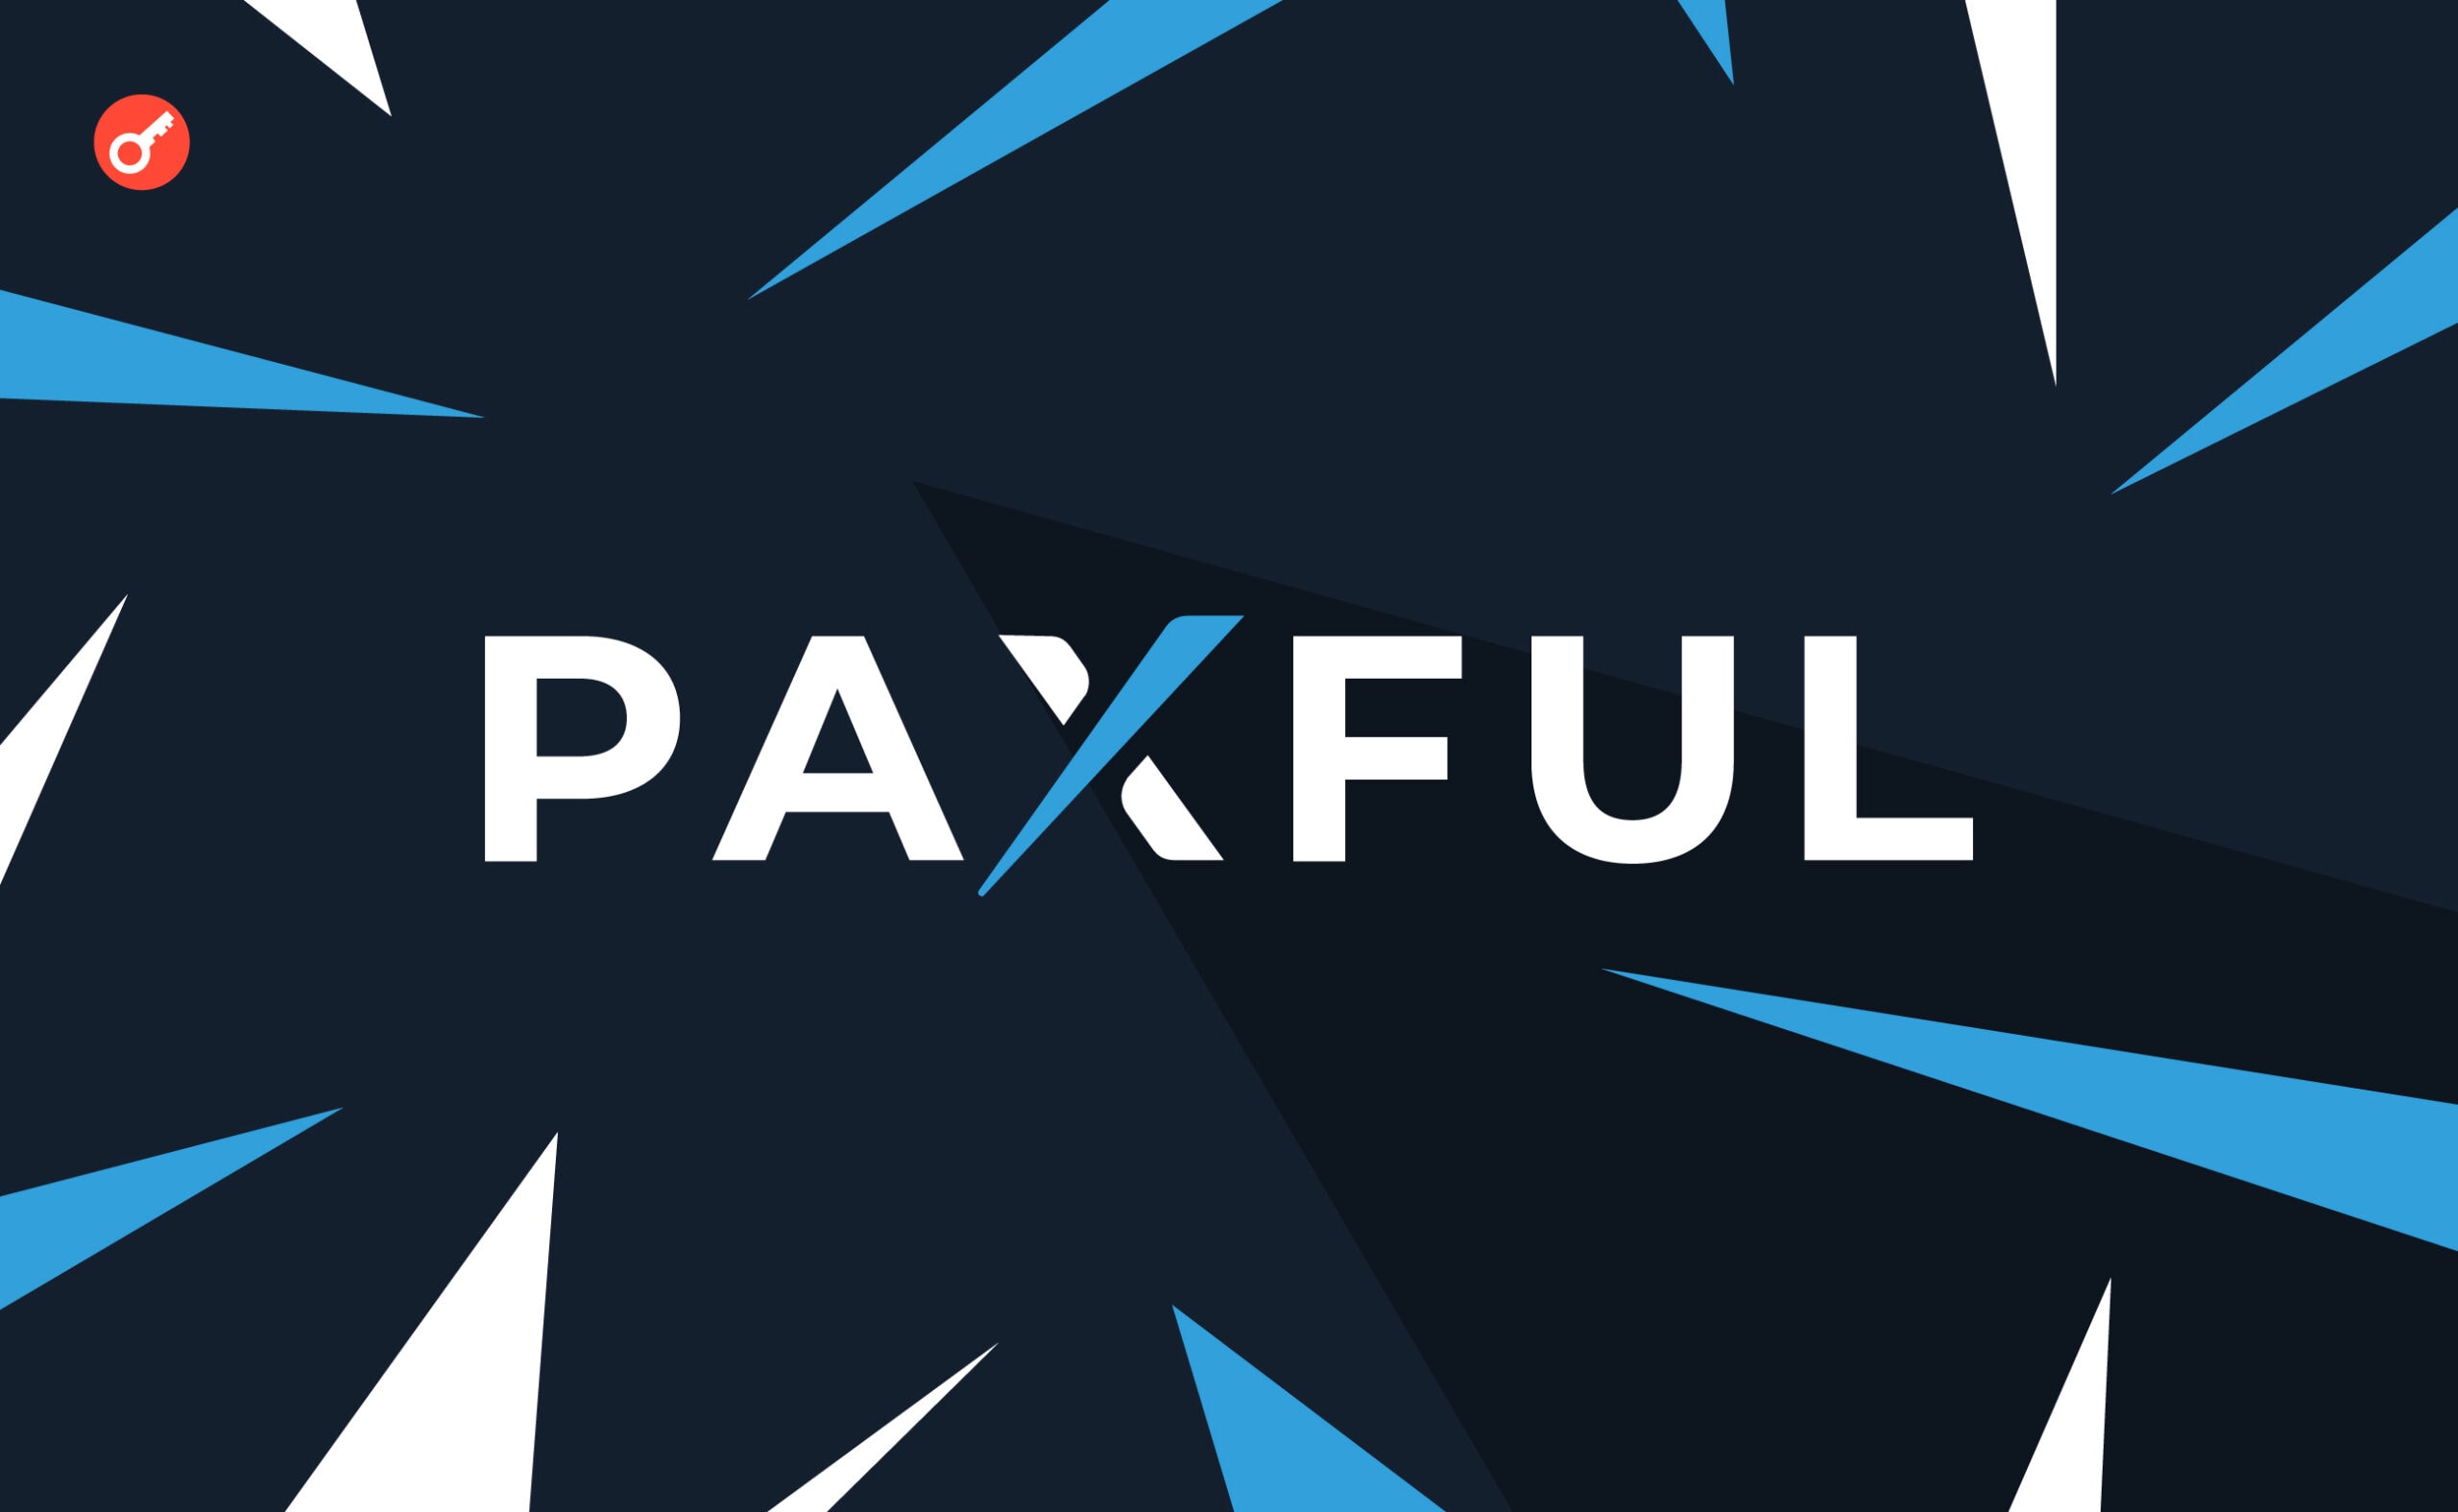 Paxful закривається через нормативний тиск і проблеми з персоналом. Головний колаж новини.